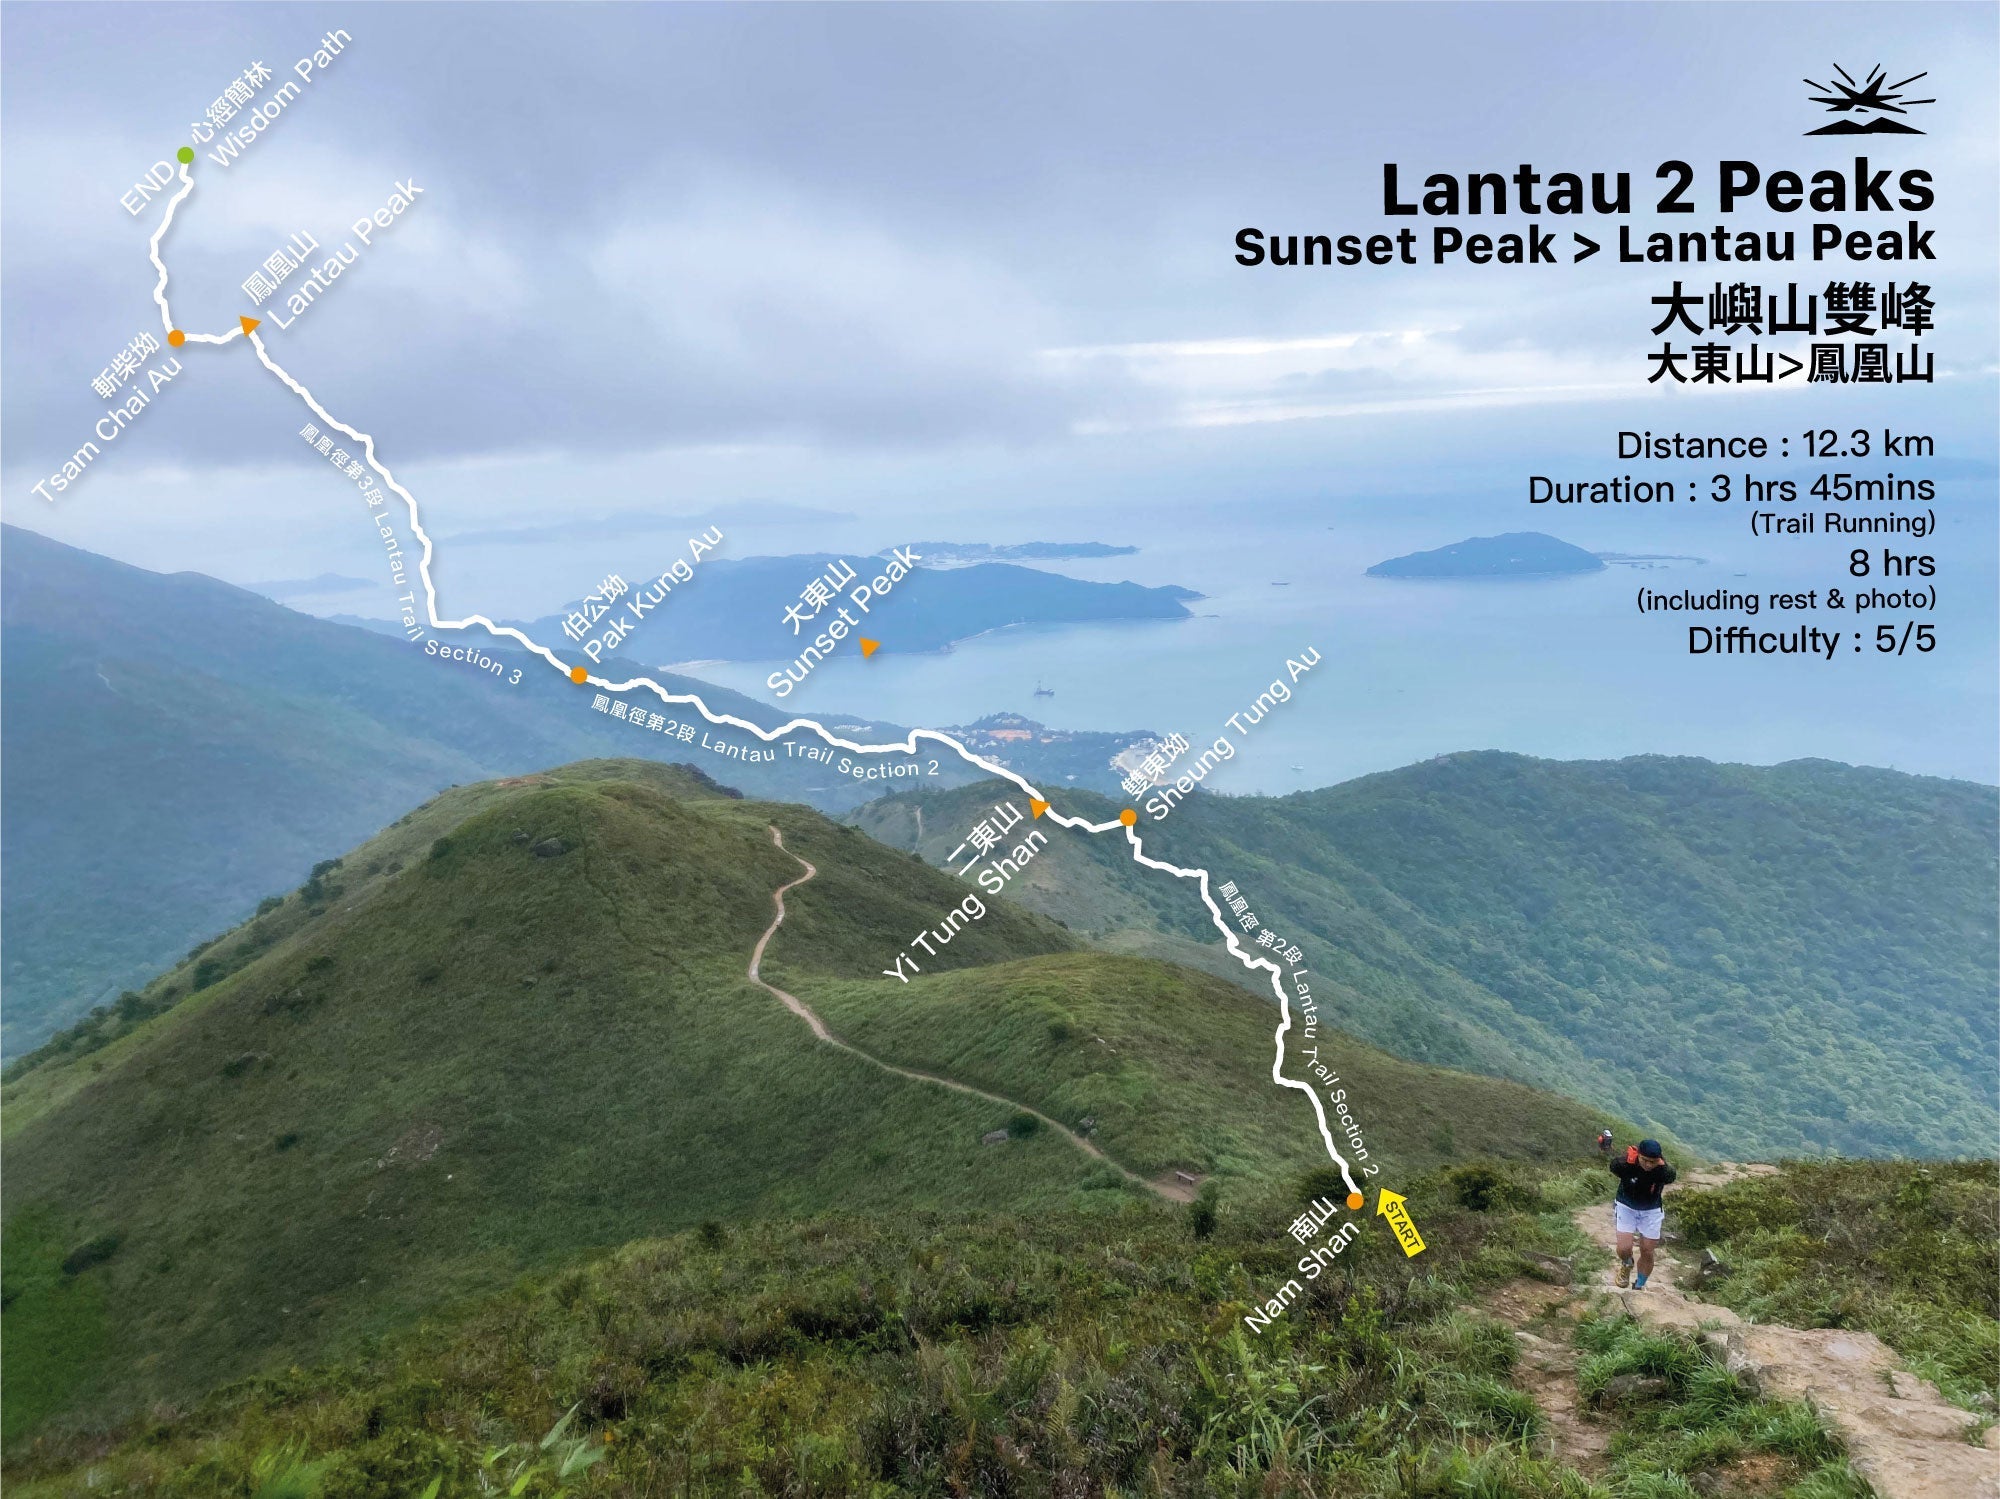 Lantau 2 Peaks - Sunset Peak to Lantau Peak